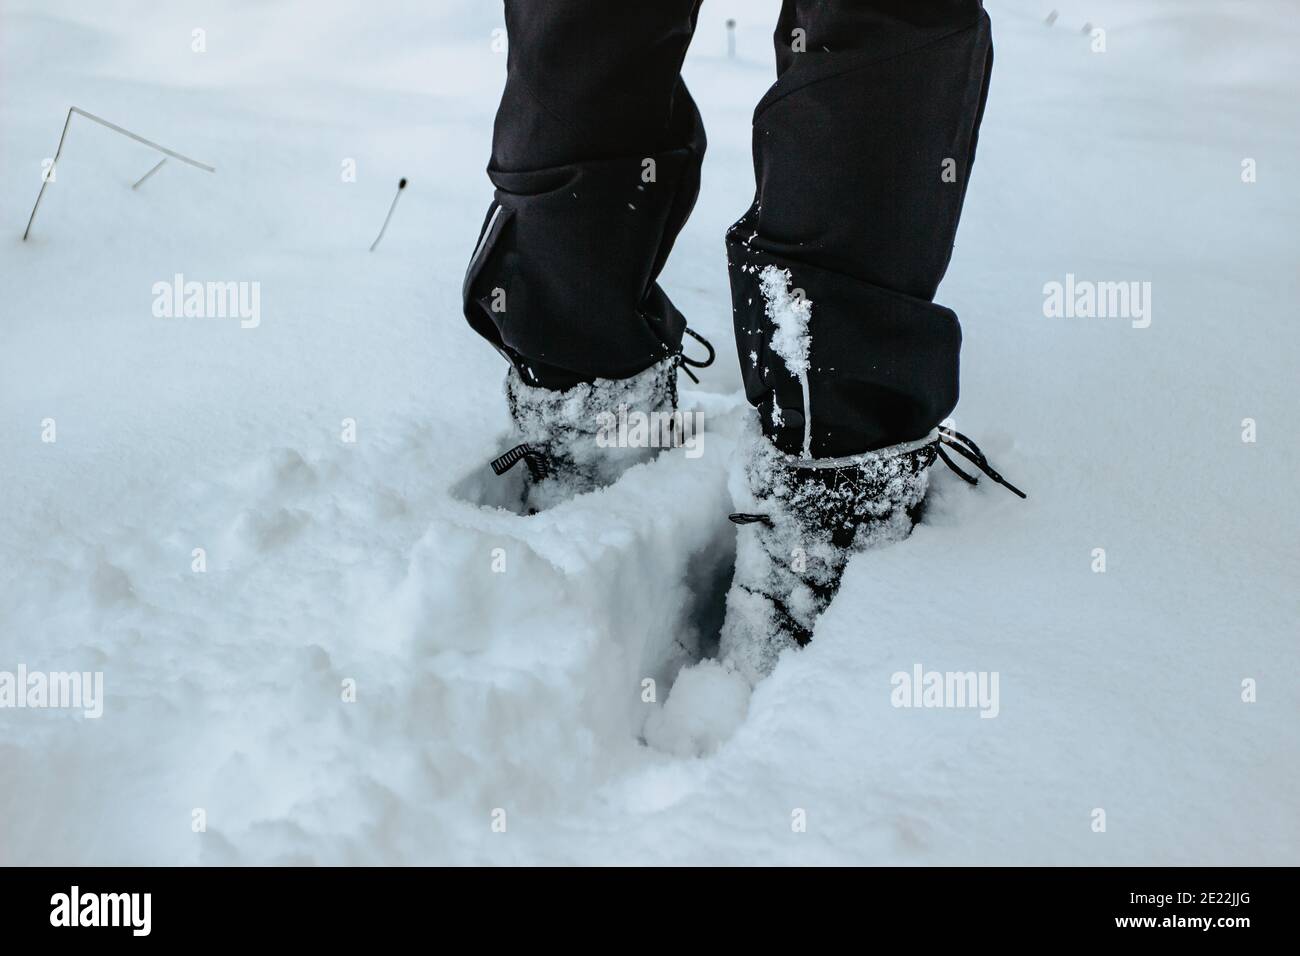 Dettaglio di stivali caldi impermeabili in neve fresca profonda.piedi femminili in scarpe nere, passeggiata invernale in neve.Vista ad angolo basso di gambe in piedi femmina con neve Foto Stock